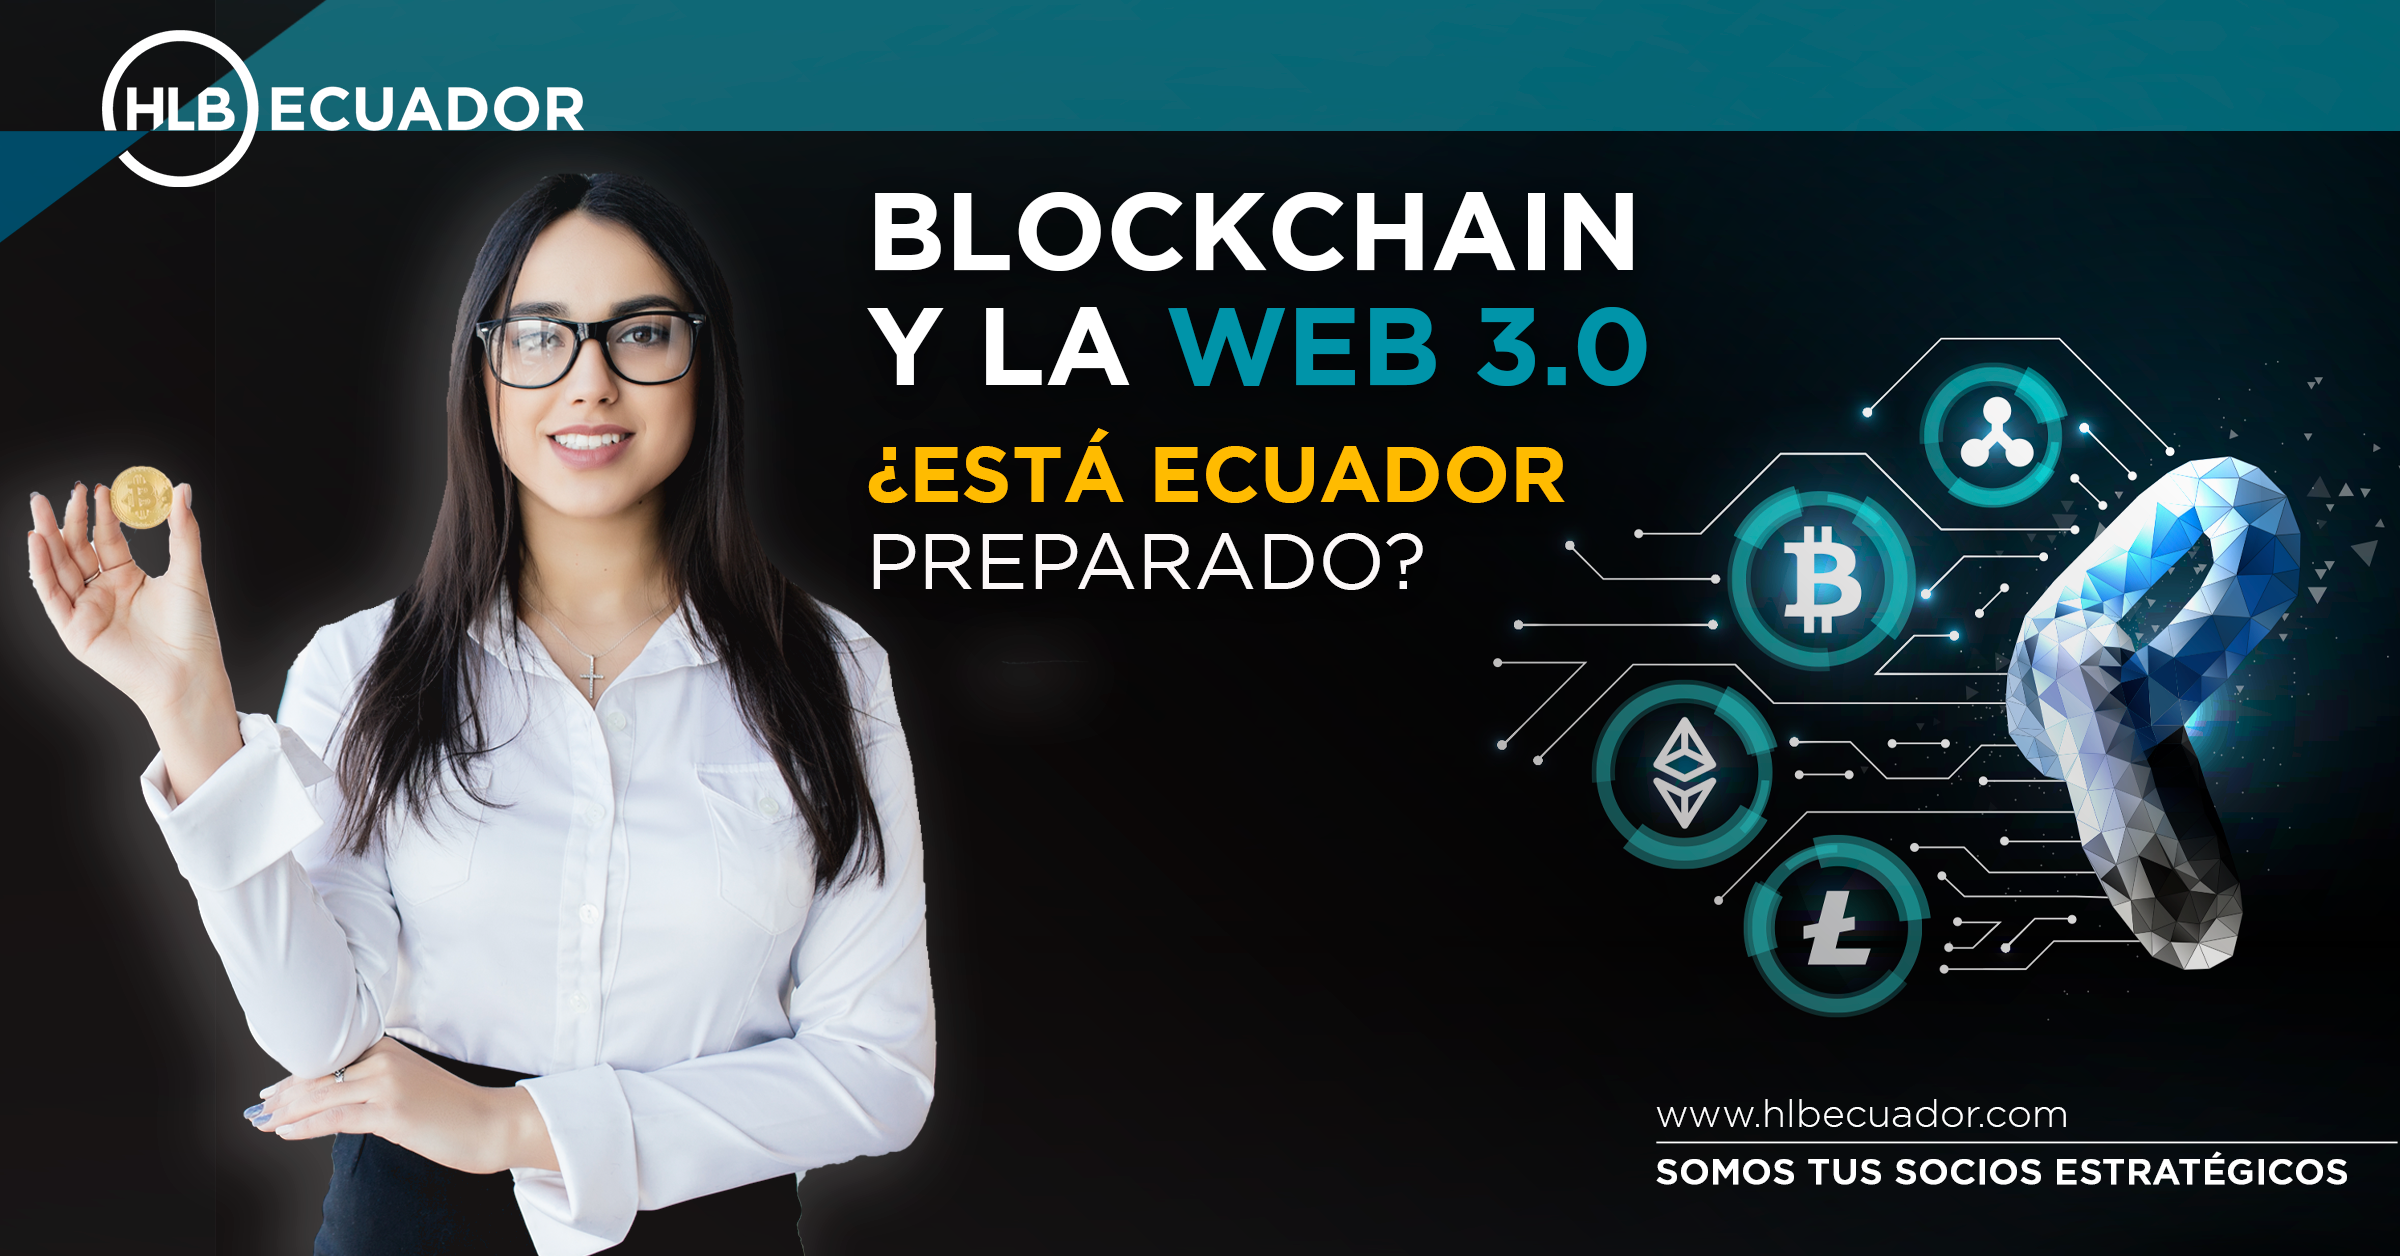 Featured image for “¿Está el Ecuador preparado para la blockchain y la web 3.0? ¿Qué esperamos?”